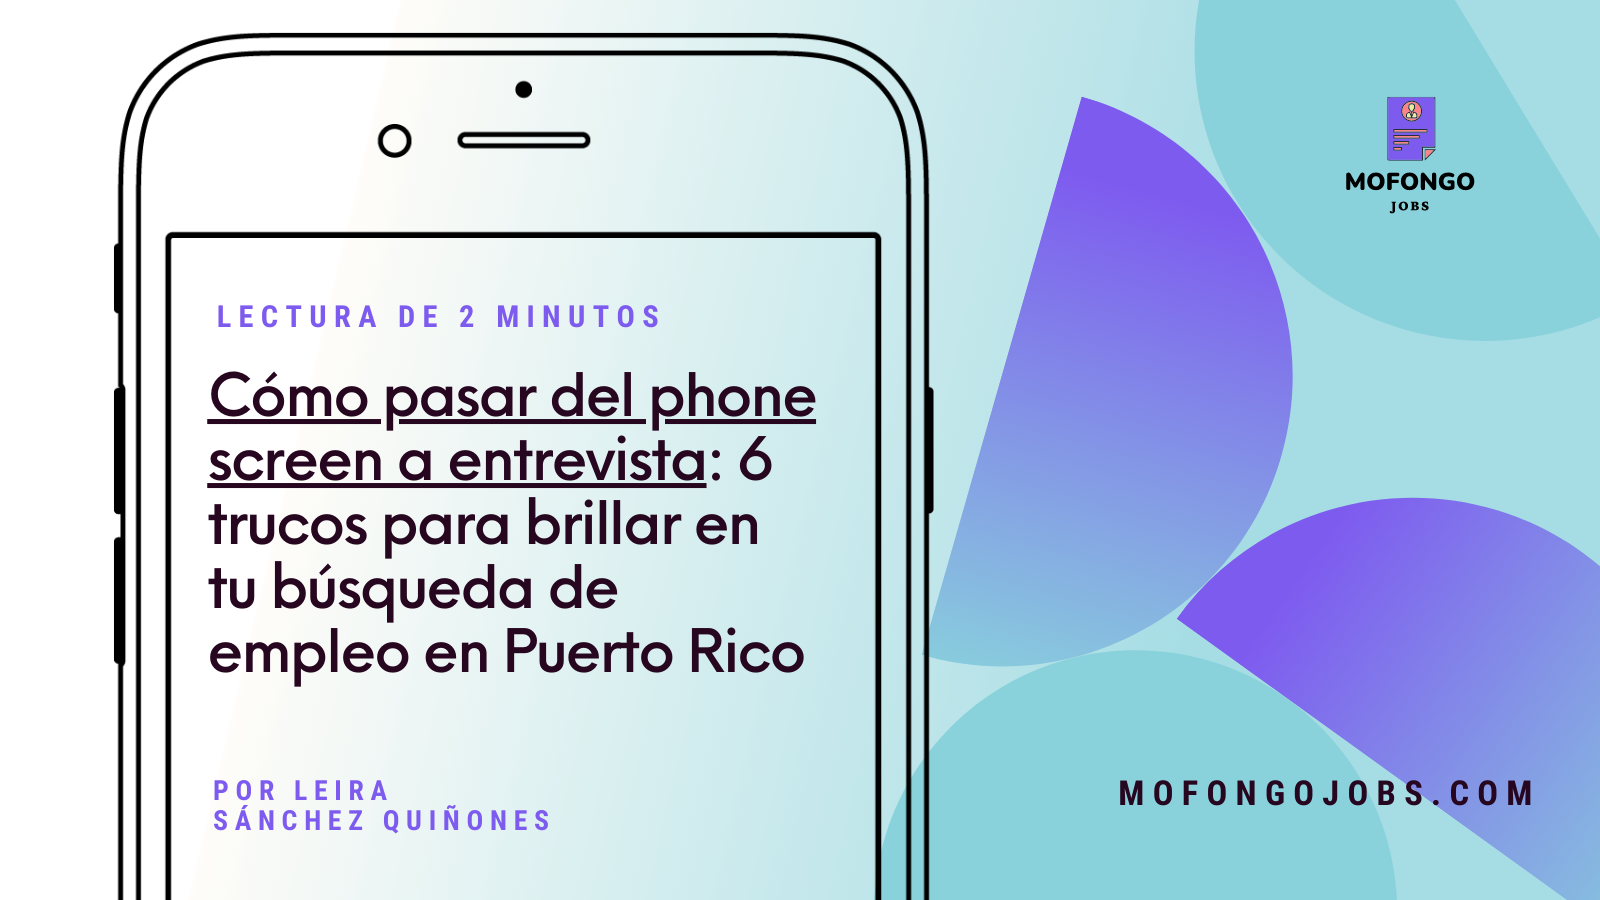 Cómo pasar del phone screen a entrevista: 6 trucos para brillar en tu búsqueda de empleo en Puerto Rico escrito en un celular con fondo azul y figuras violetas. Además el logo y url de mofongo jobs